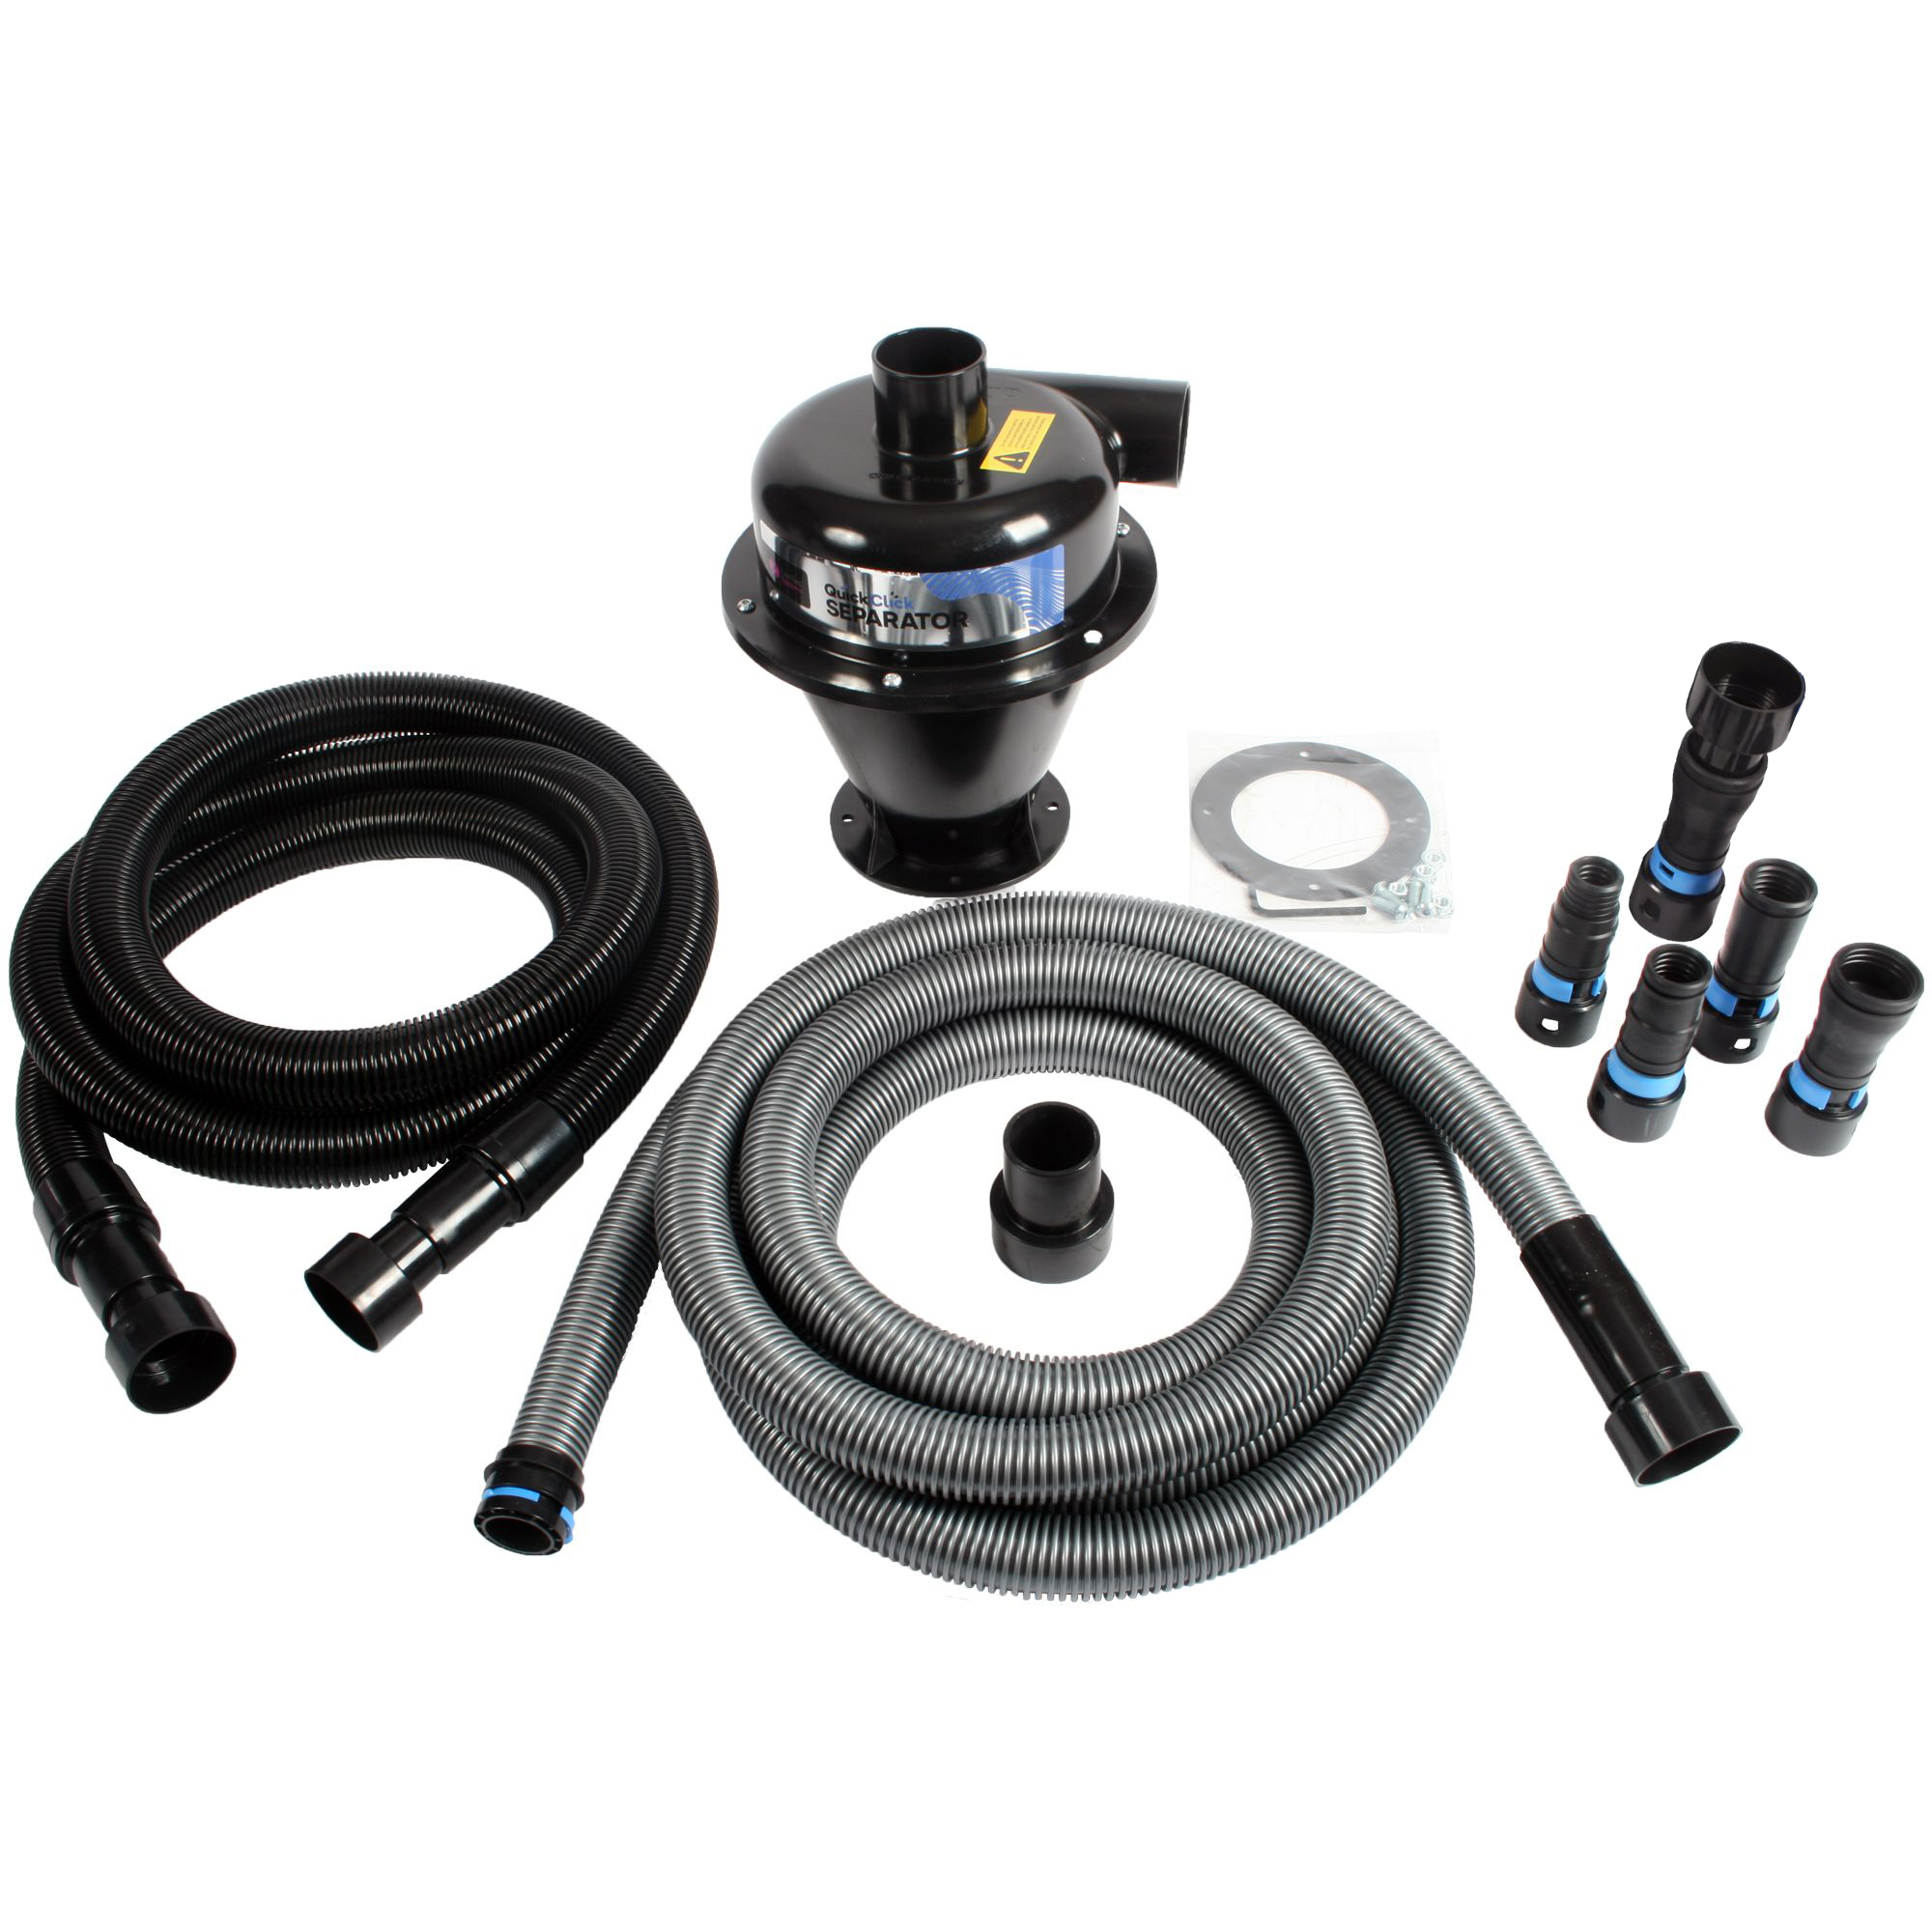 In-depth look at vacuum hoses, WHICH ONE IS BEST, Festool, Dewalt